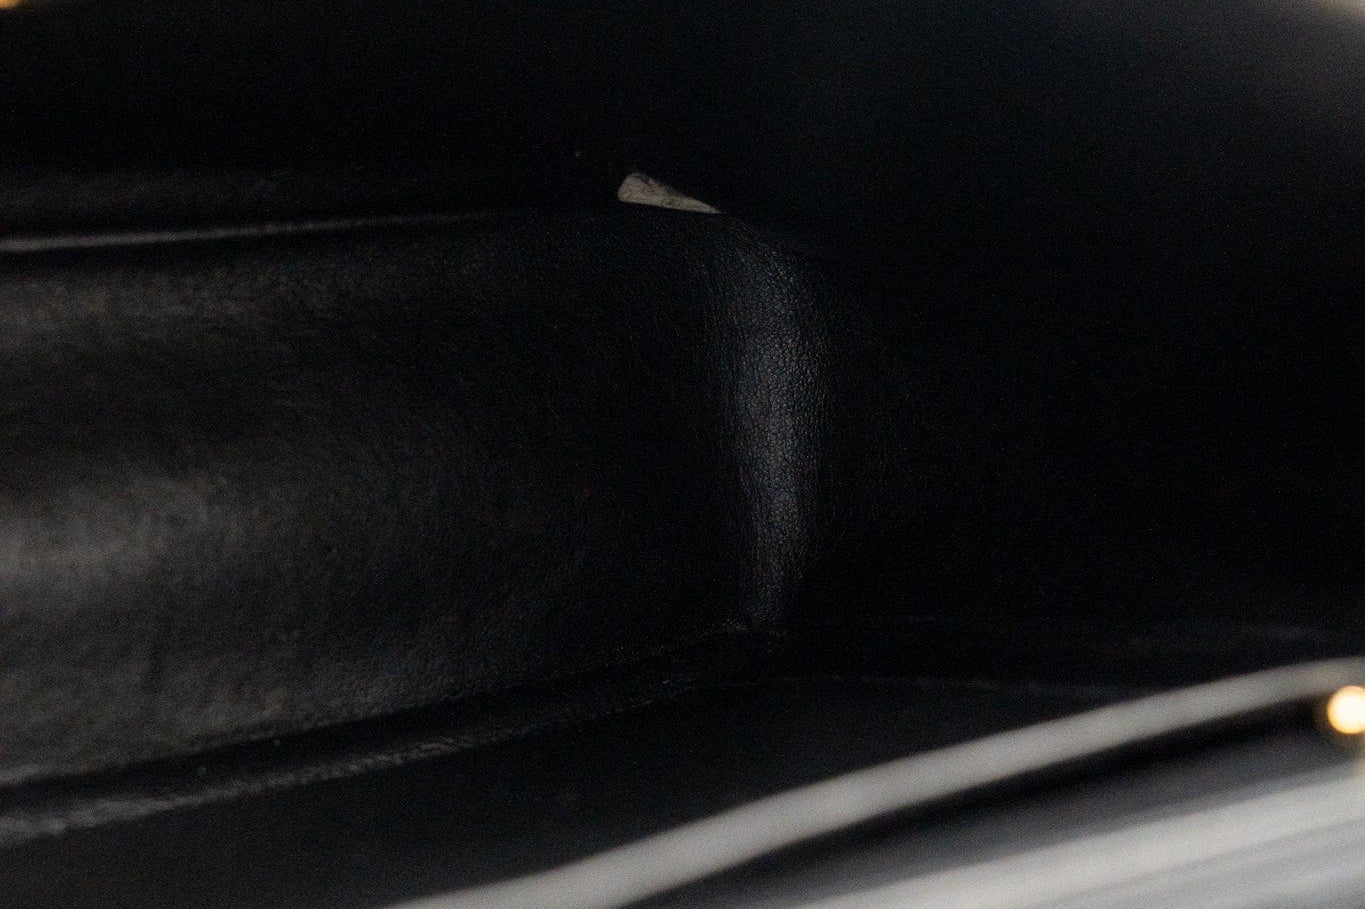 CHANEL Handbag Vintage Black Velvet Matelasse Jumbo Single Flap - Redeluxe